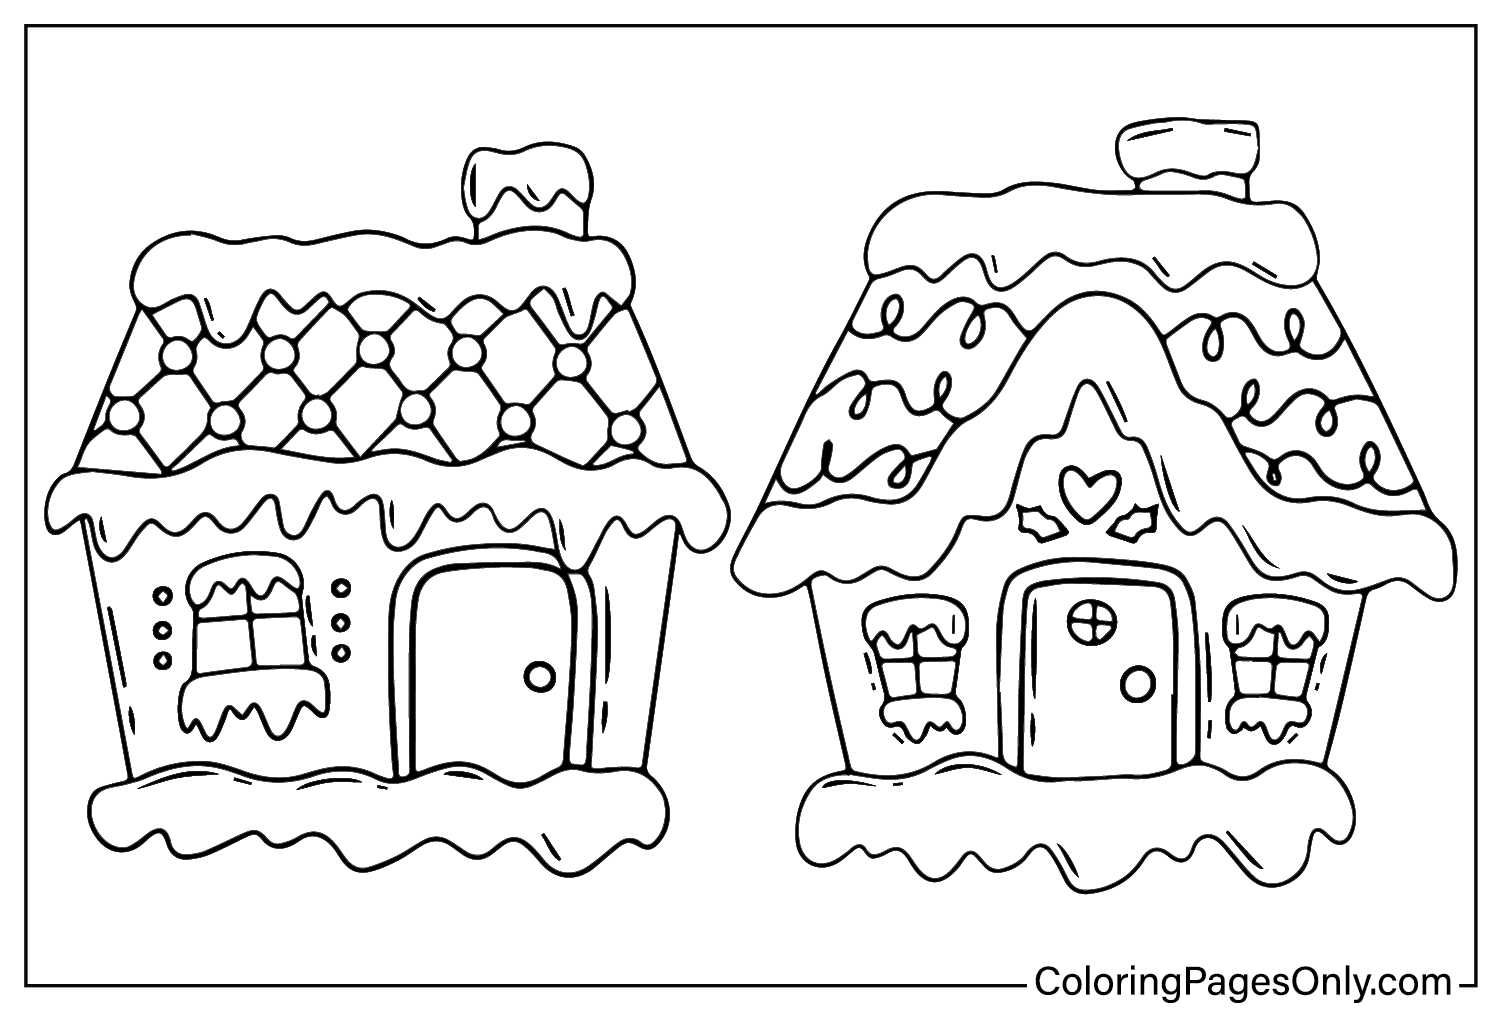 Página para colorear de la casa de jengibre para imprimir desde la casa de jengibre